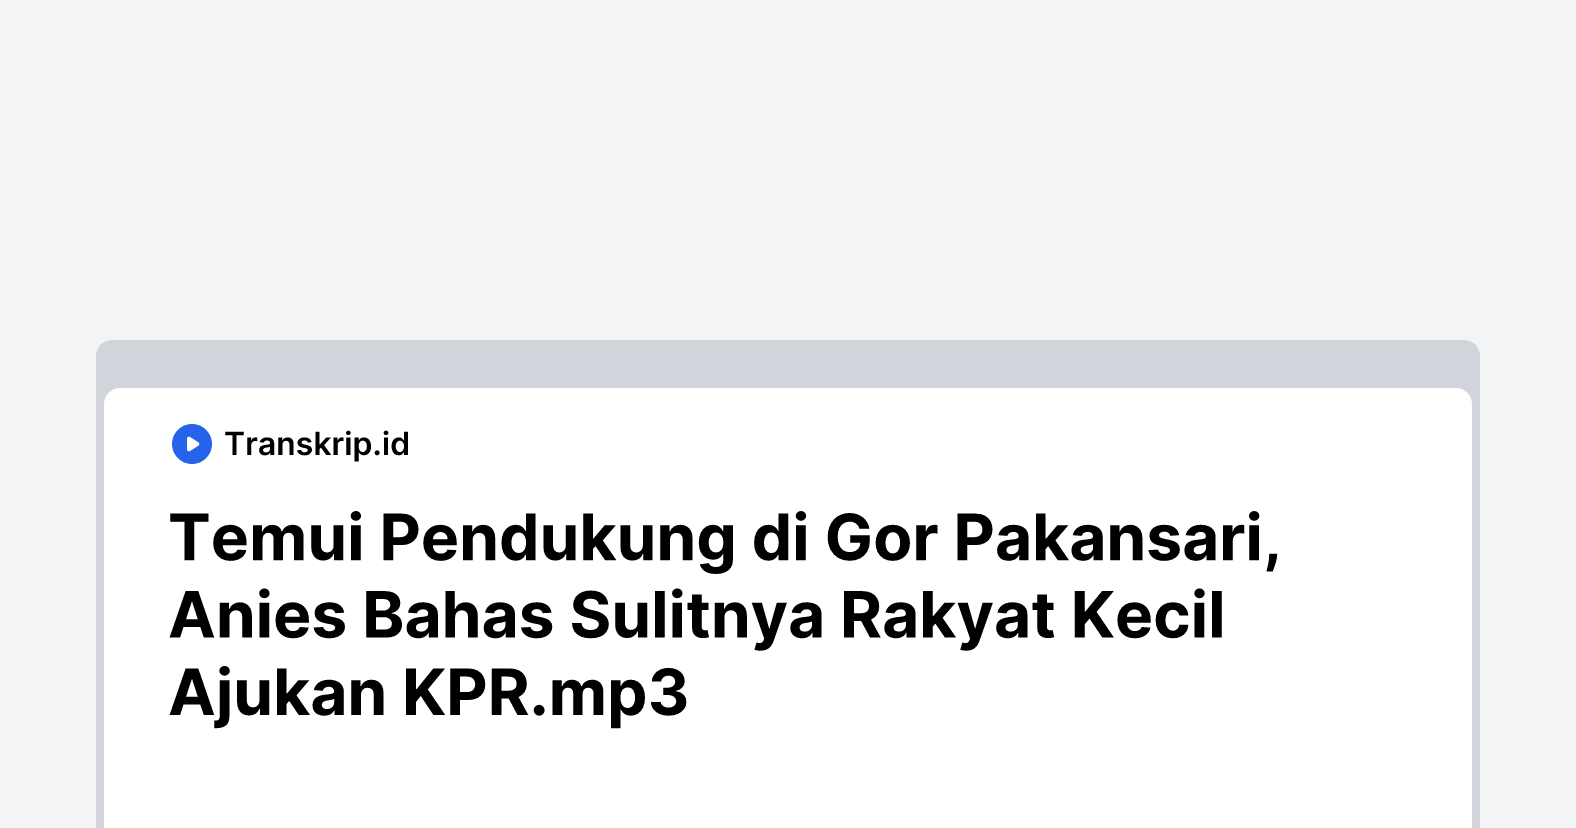 Temui Pendukung di Gor Pakansari, Anies Bahas Sulitnya Rakyat Kecil Ajukan KPR.mp3